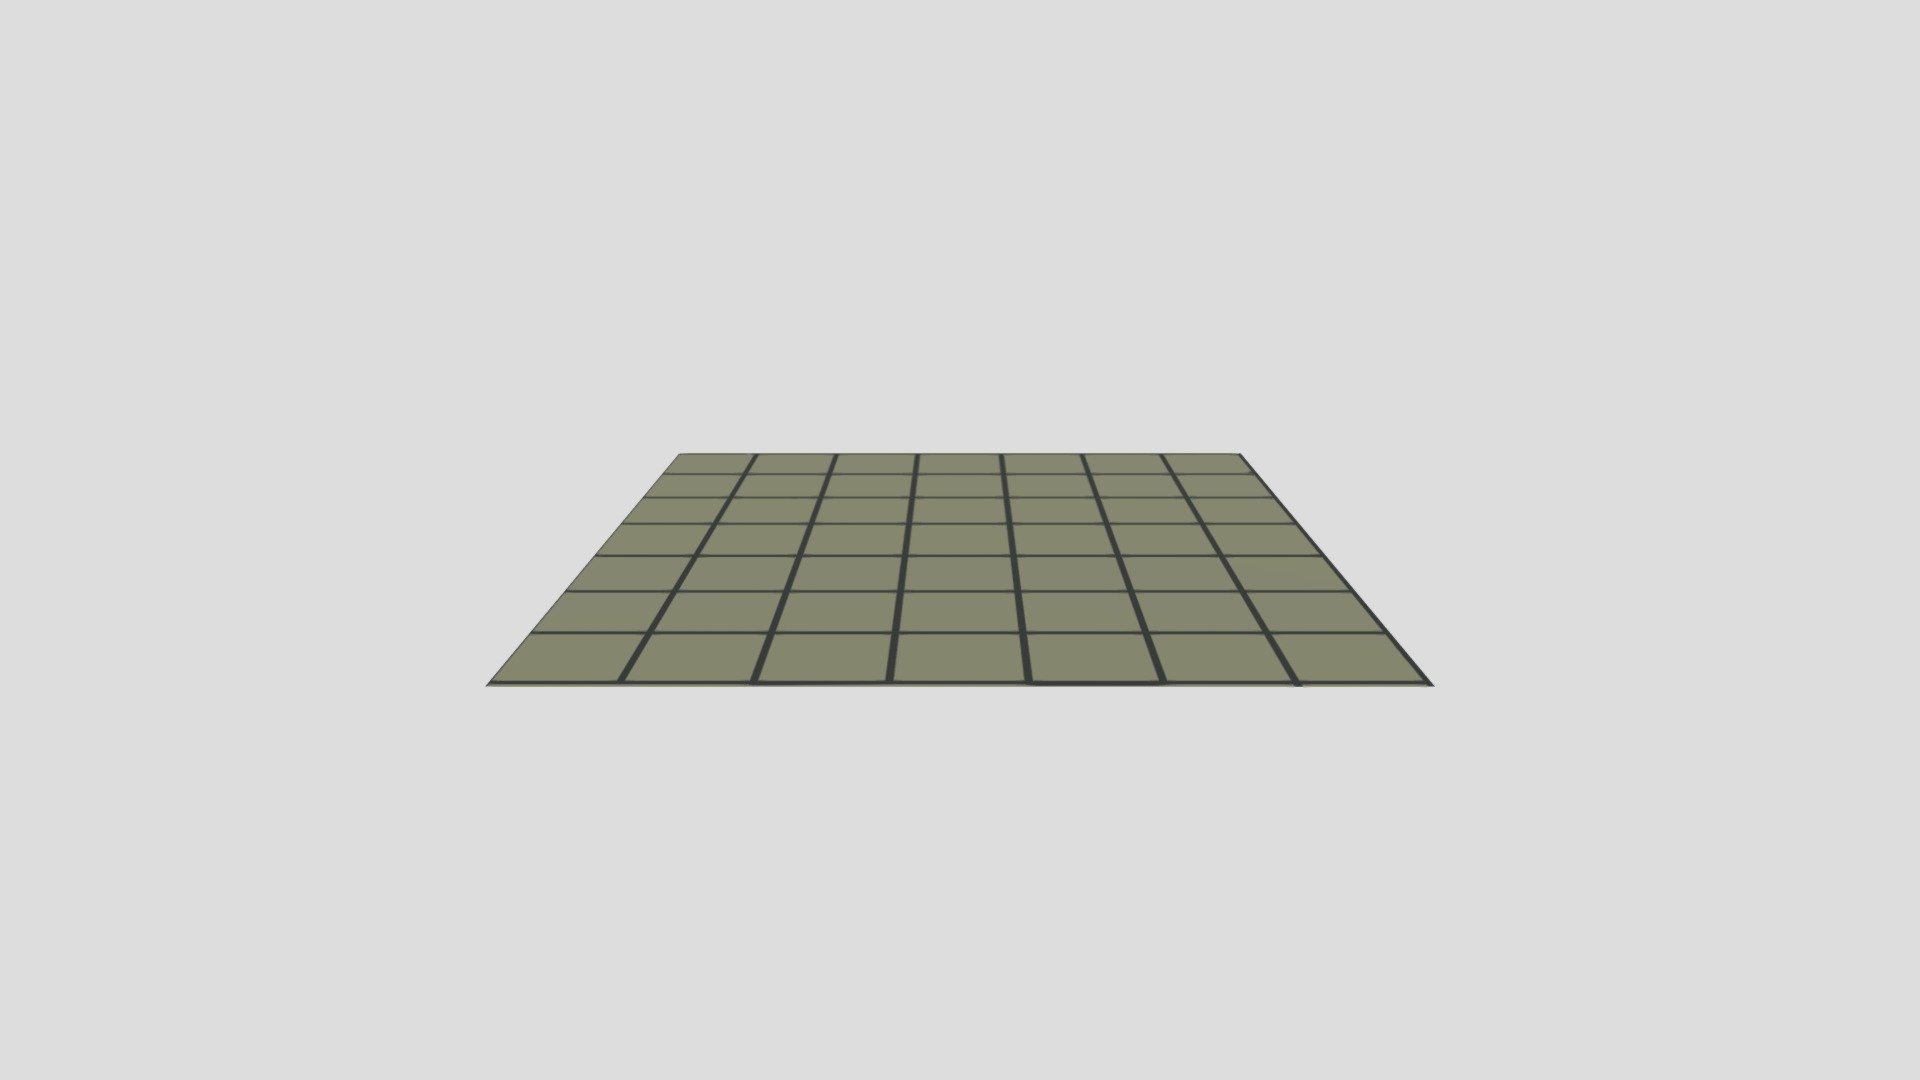 floor - 3D model by AnnabelK [44680bf] - Sketchfab